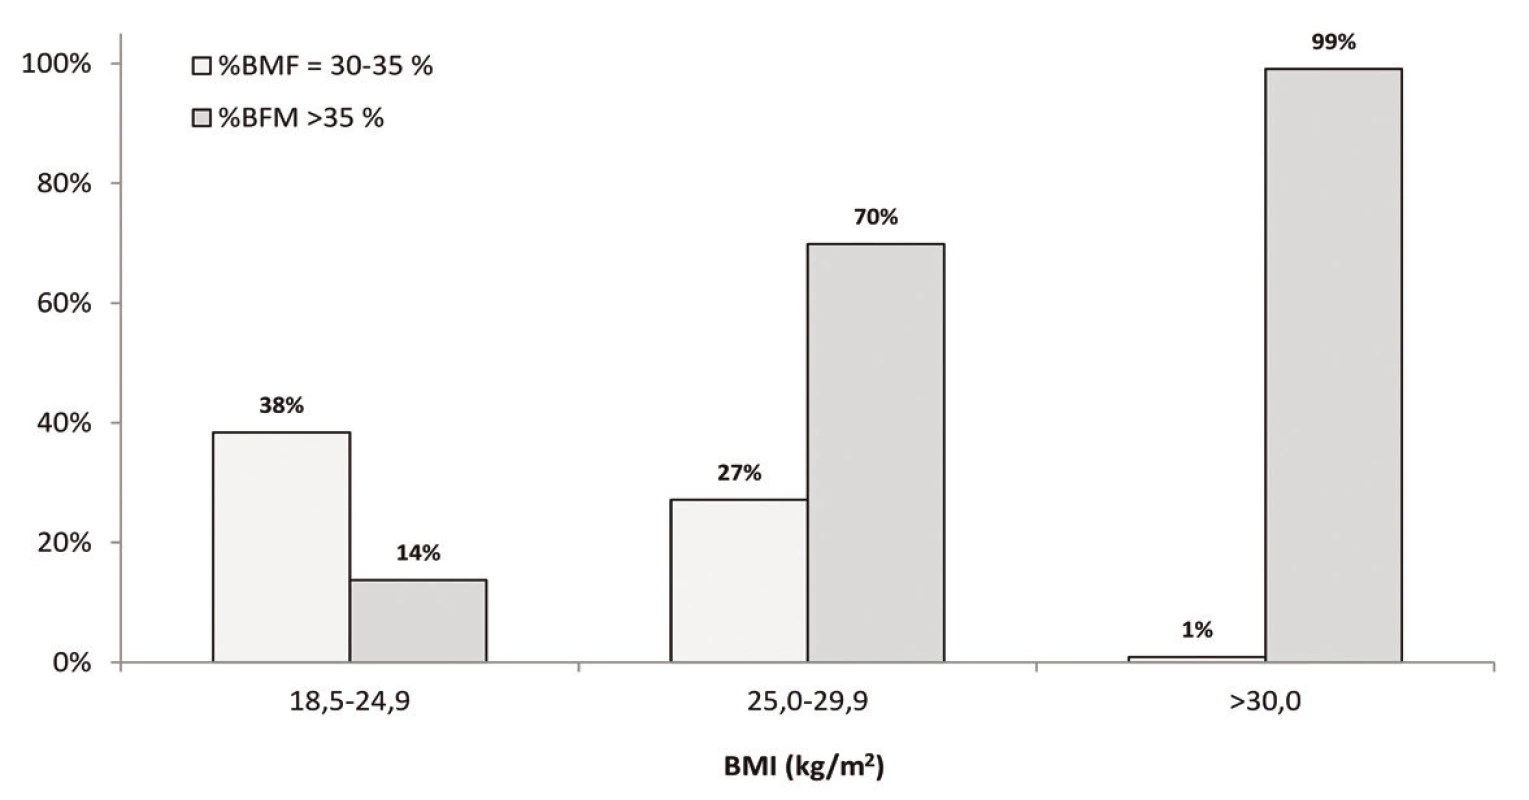 Zastoupením probandek s nadváhou a obezitou hodnocenou dle %BFM v jednotlivých kategoriích BMI